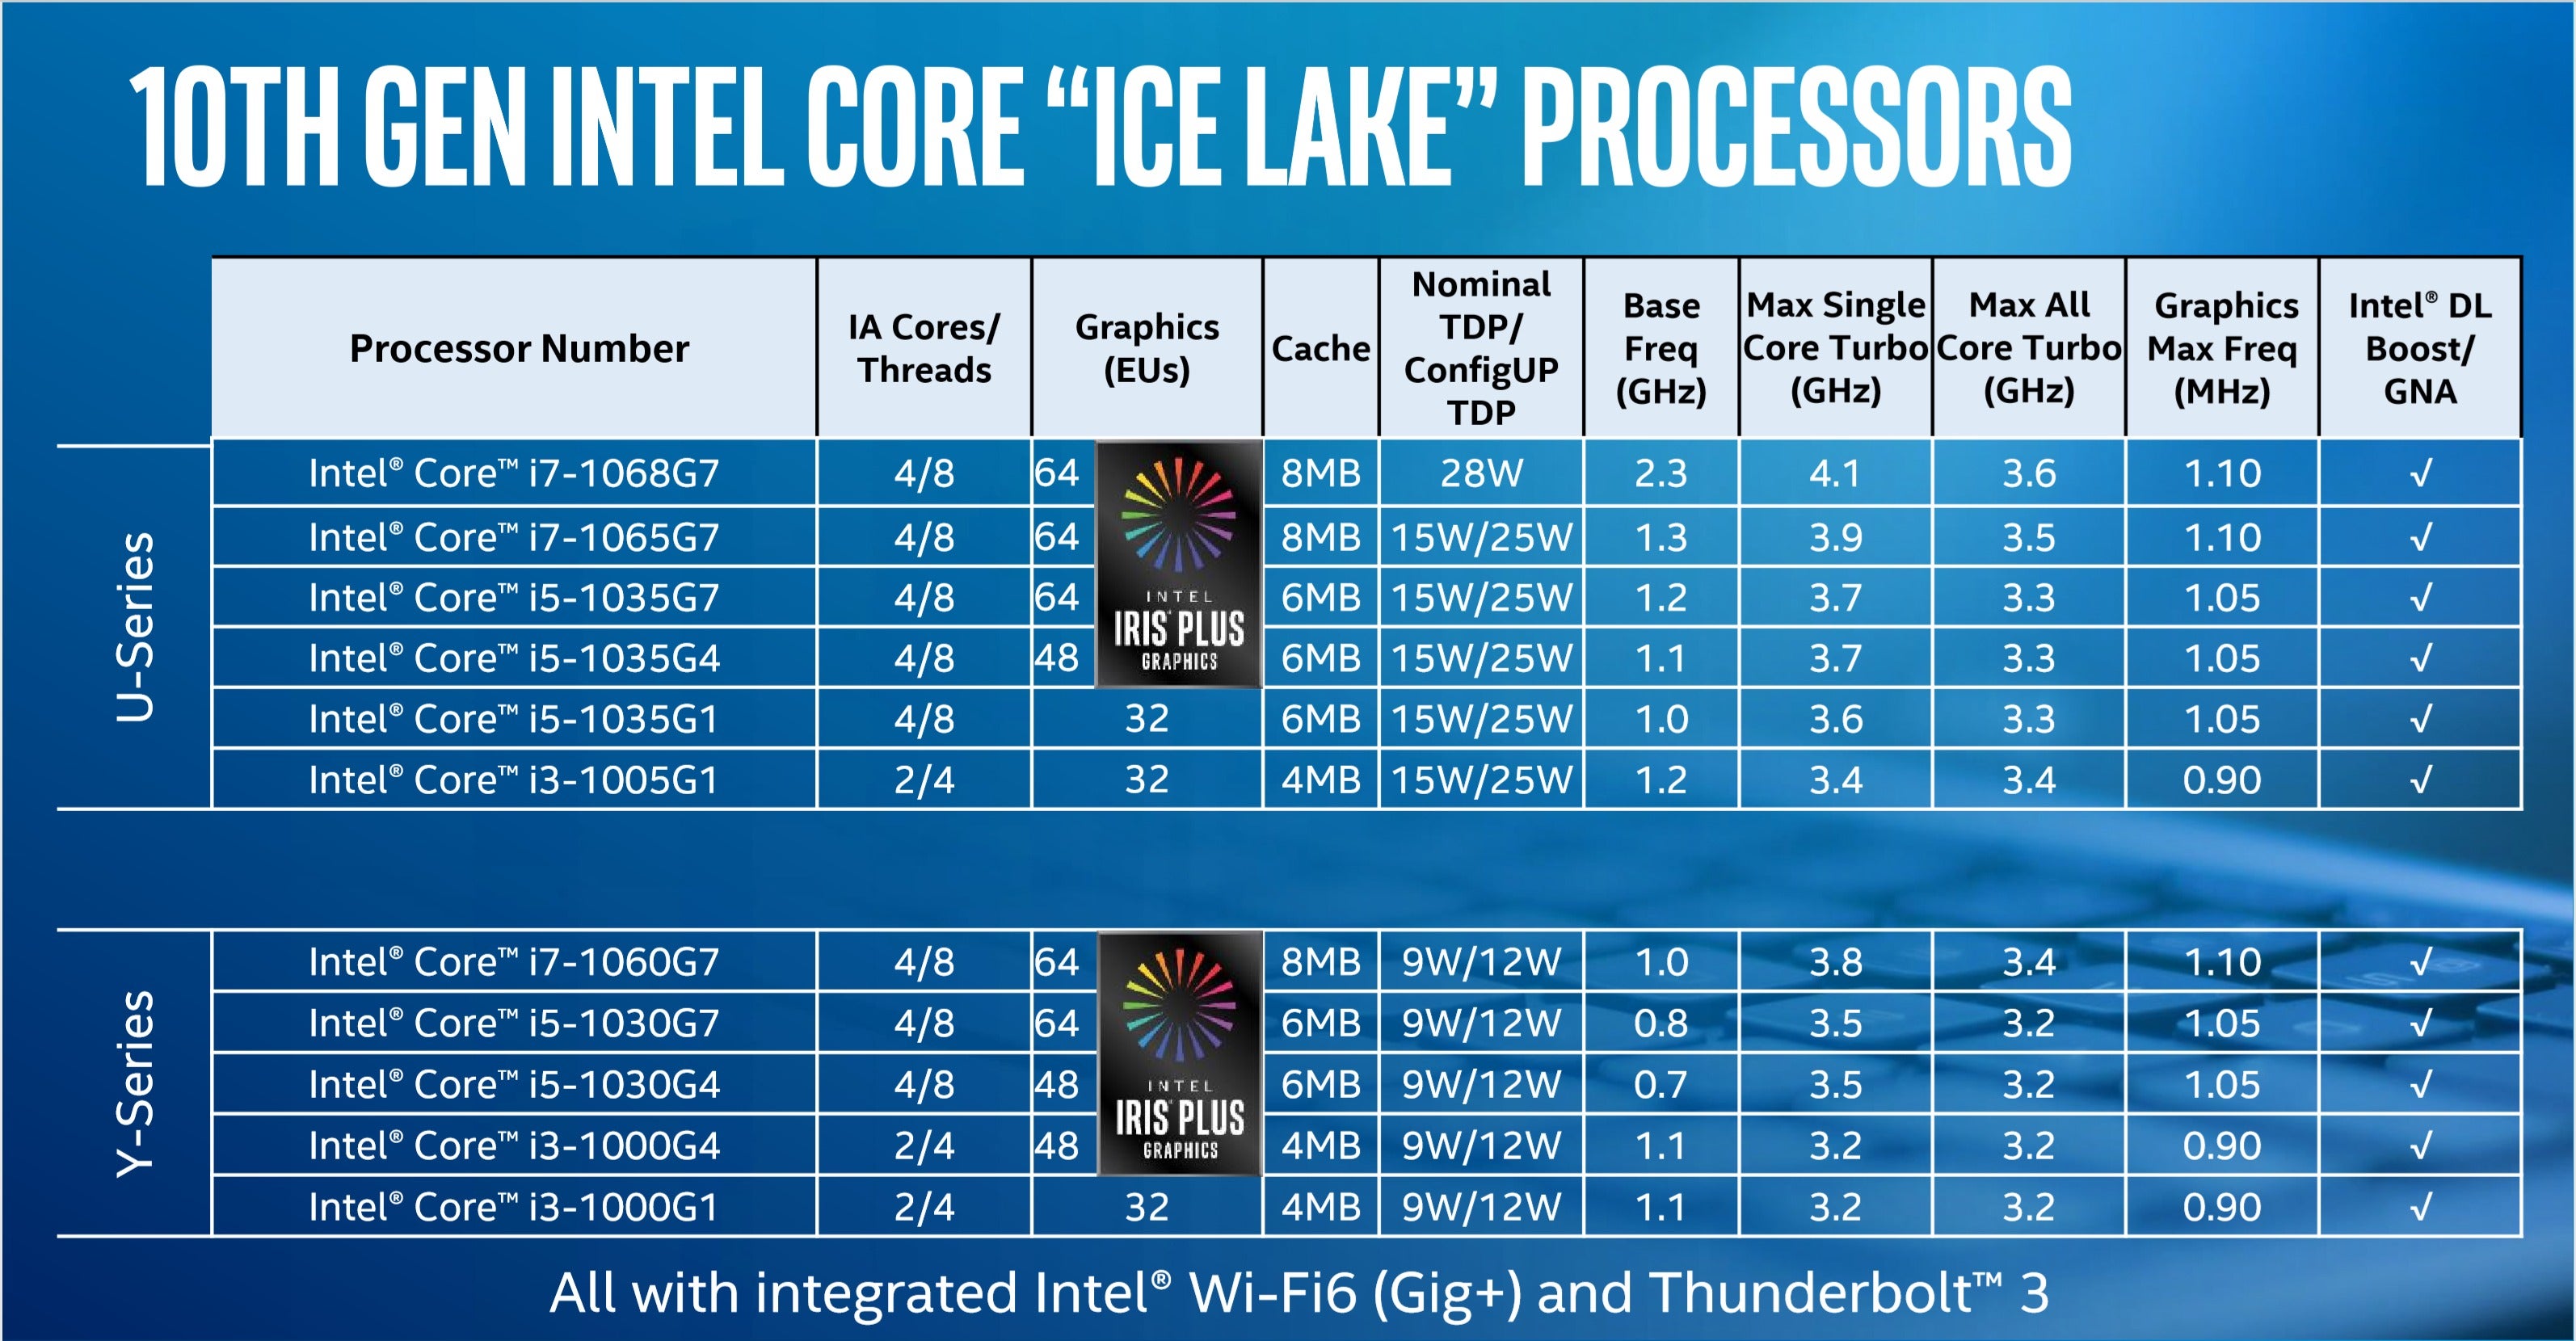 intel-ice-lake-speeds-and-feeds-no-watermark-100806899-orig.jpg